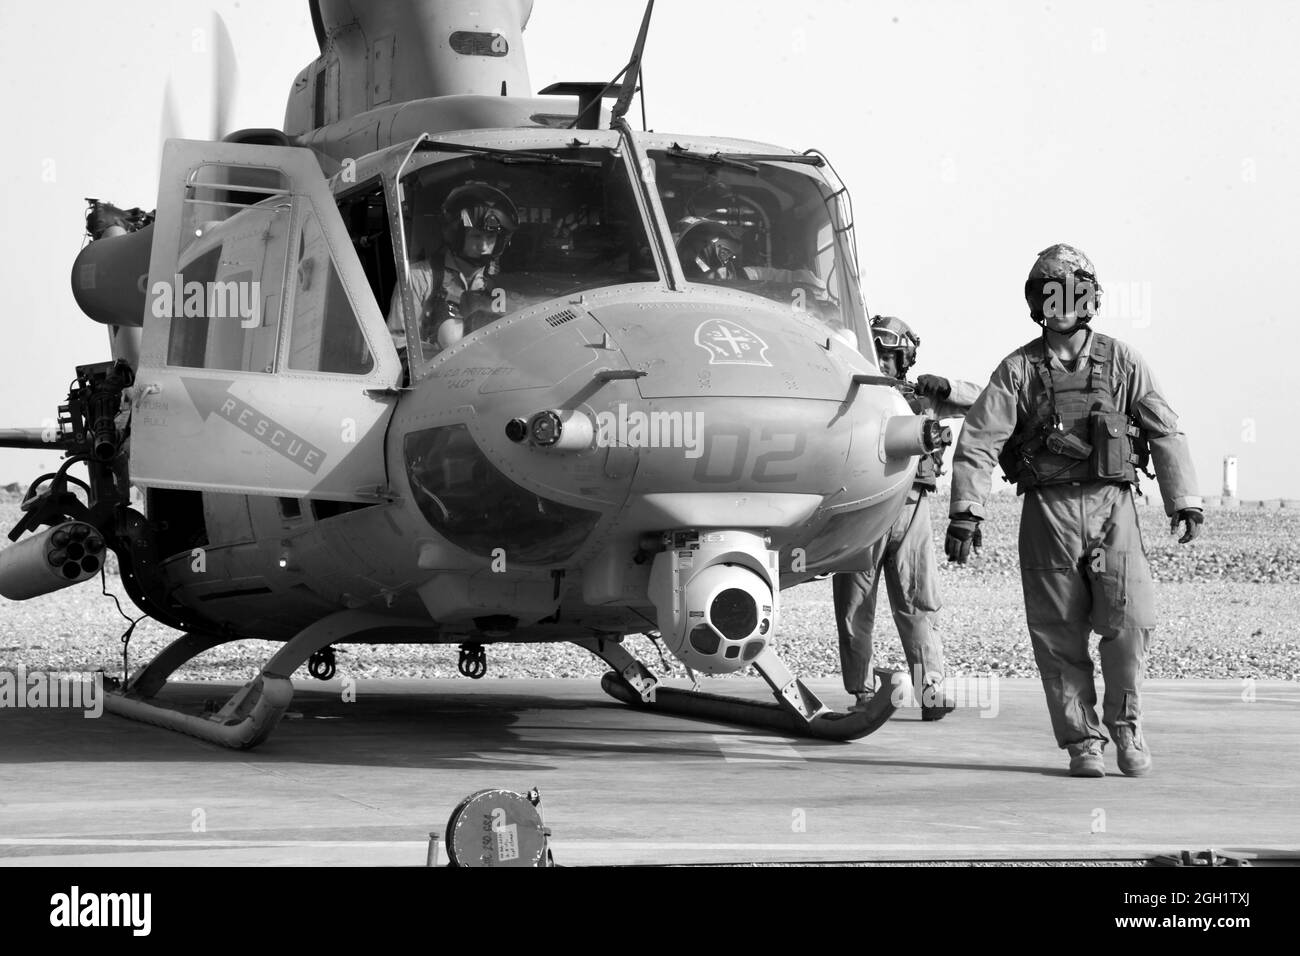 Caporal de lance du corps des Marines des États-Unis Seamos Clarke et Sgt. Robert Wise, de l'Escadron d'hélicoptères d'attaque légère marine (HMLA) 469, effectue des contrôles en amont d'un hélicoptère UH-1Y Huey avant de retourner au Camp Leatherneck après avoir exécuté l'opération Halberd V dans la province de Helmand, en Afghanistan, le 20 juin 2012. Le HMLA-469 a assuré la reconnaissance aérienne et la sécurité des Marines de la 3e LAR pendant l'opération Halberd V afin d'empêcher la distribution de la contrebande à l'appui des opérations de lutte contre l'insurrection. Banque D'Images